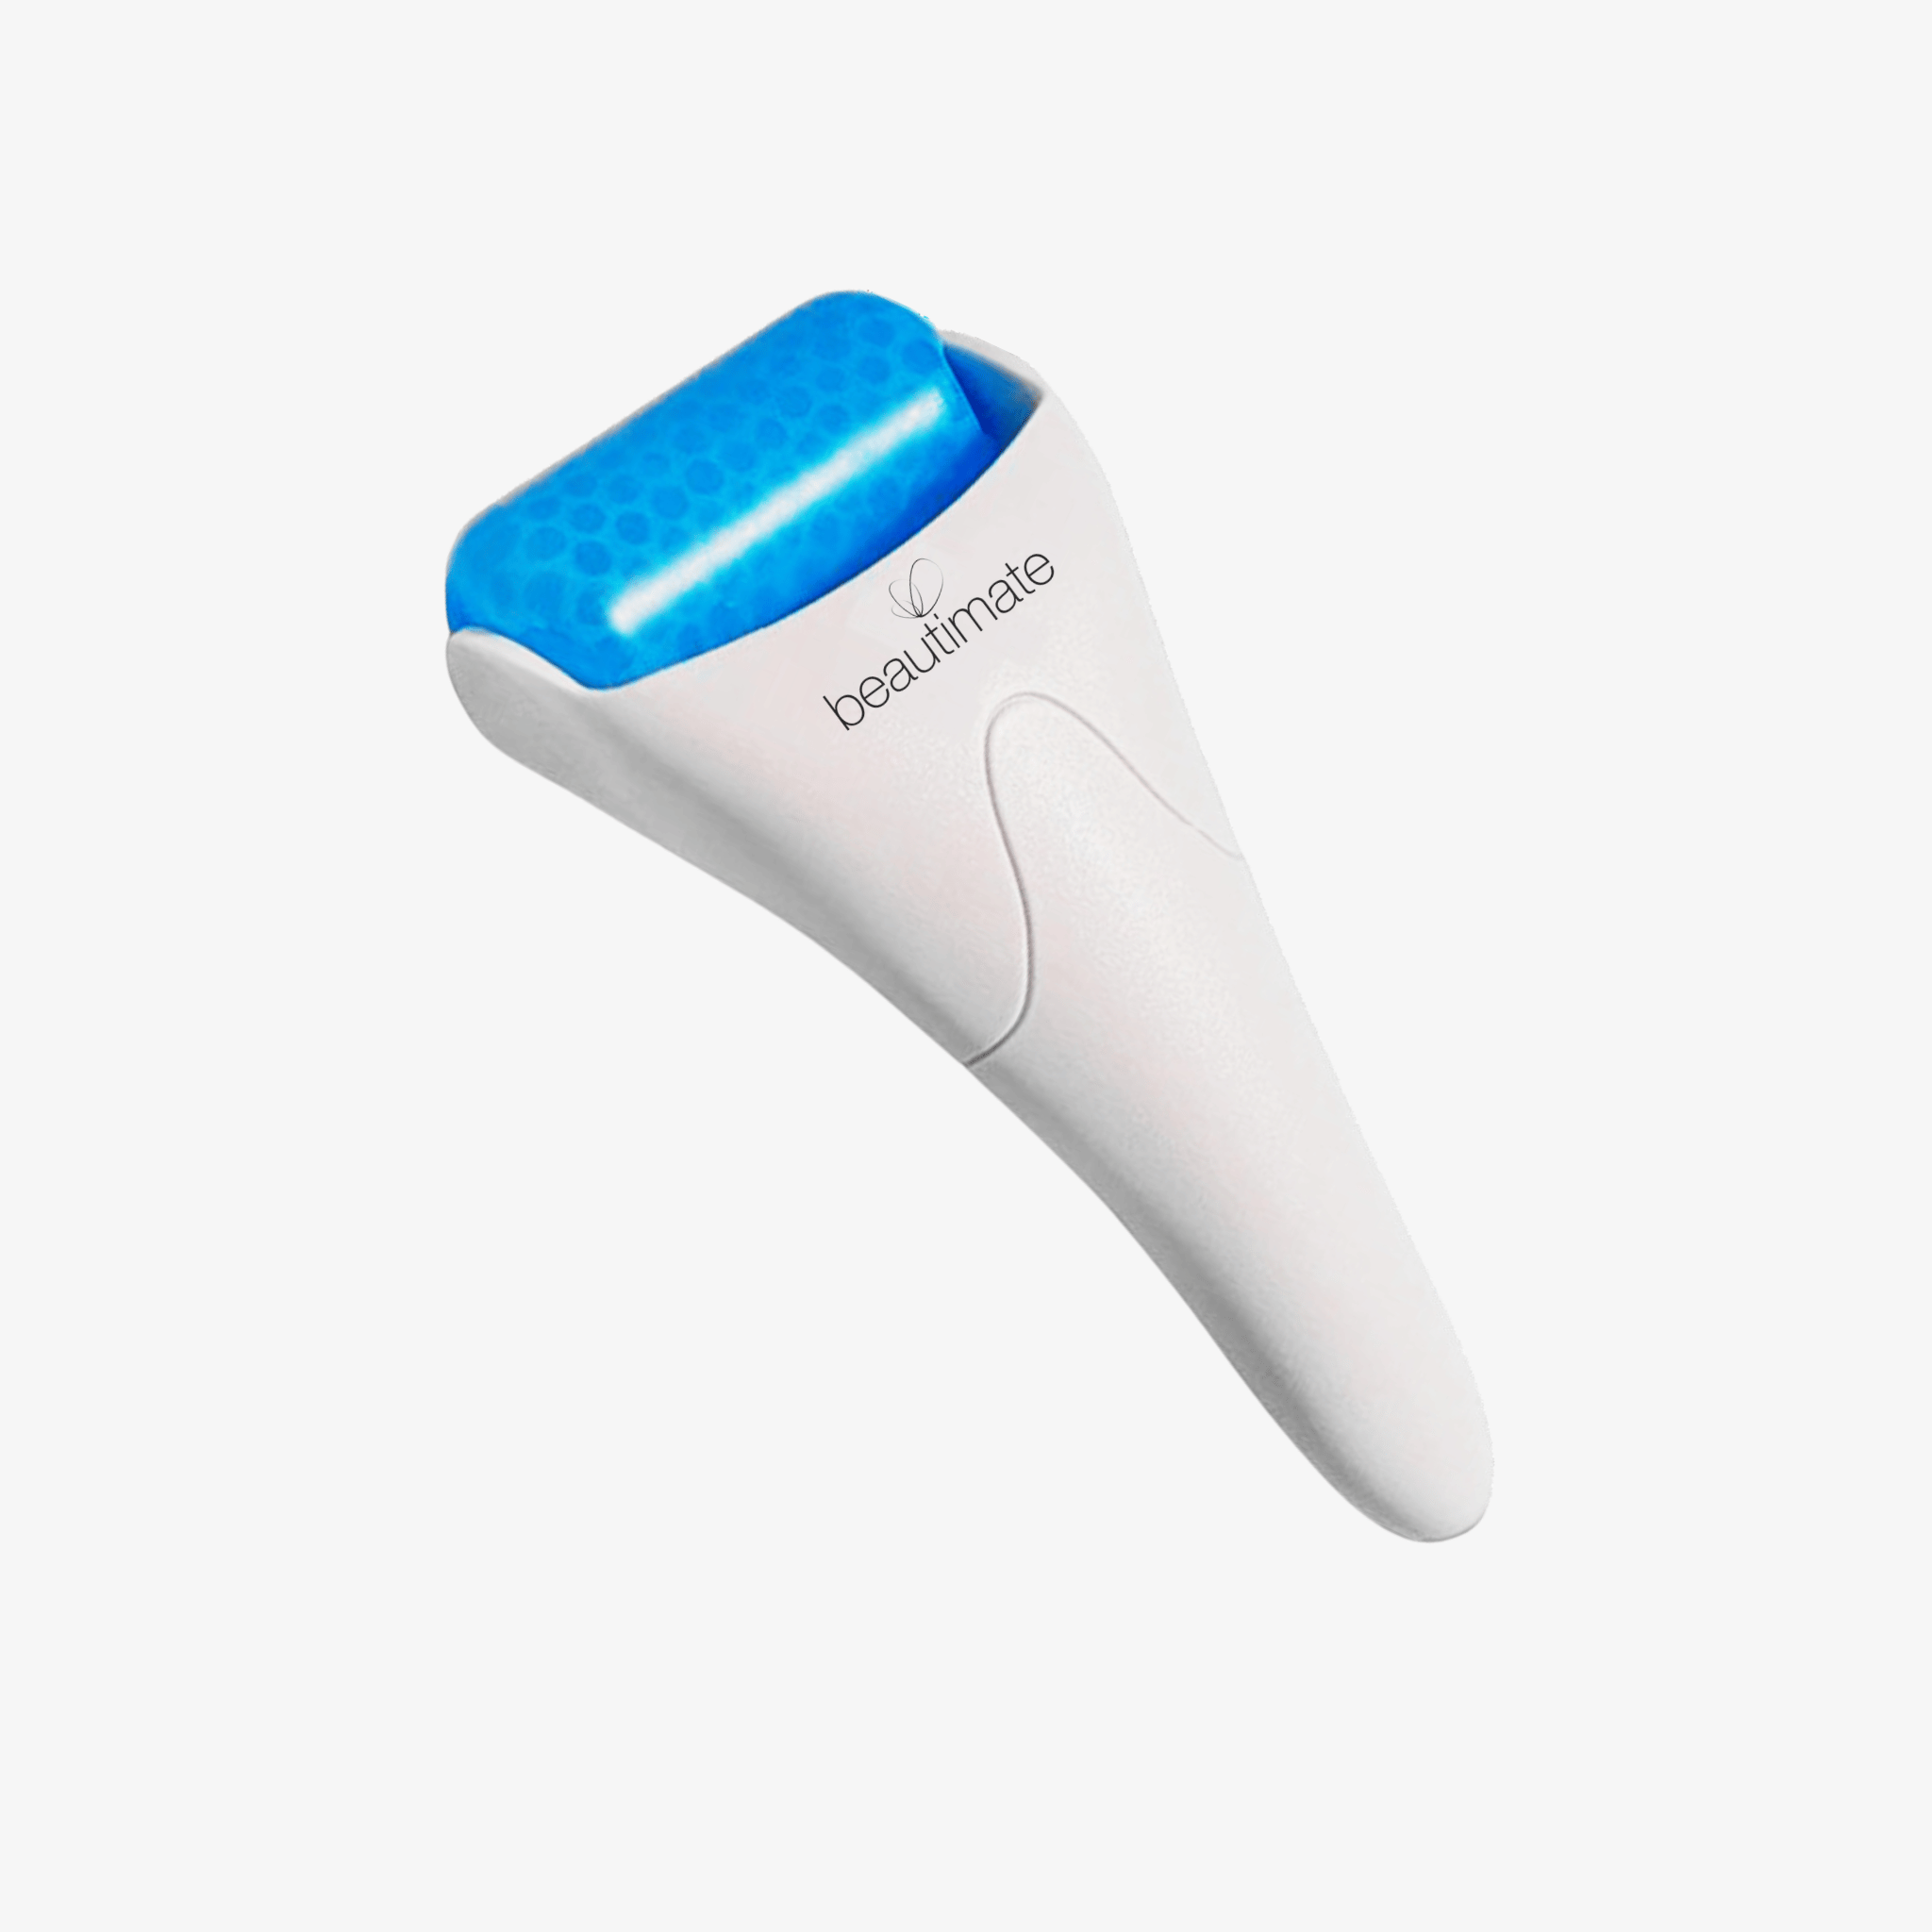 Esarora Ice Roller: This $20 tool depuffs skin